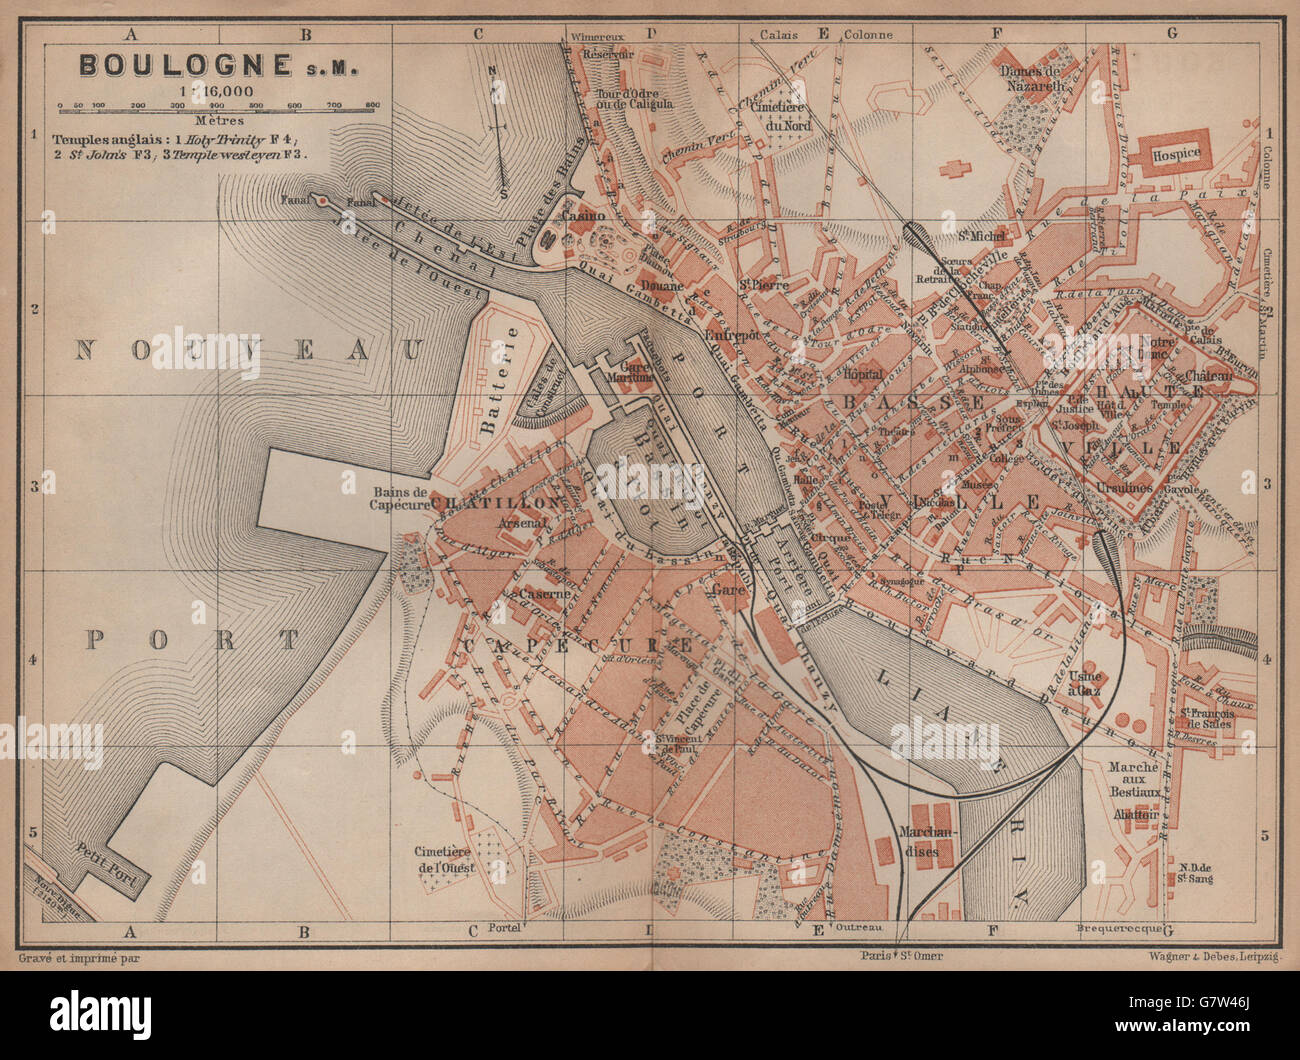 BOULOGNE-SUR-MER town city plan de la ville. Pas-de-Calais carte, 1899 old map Stock Photo